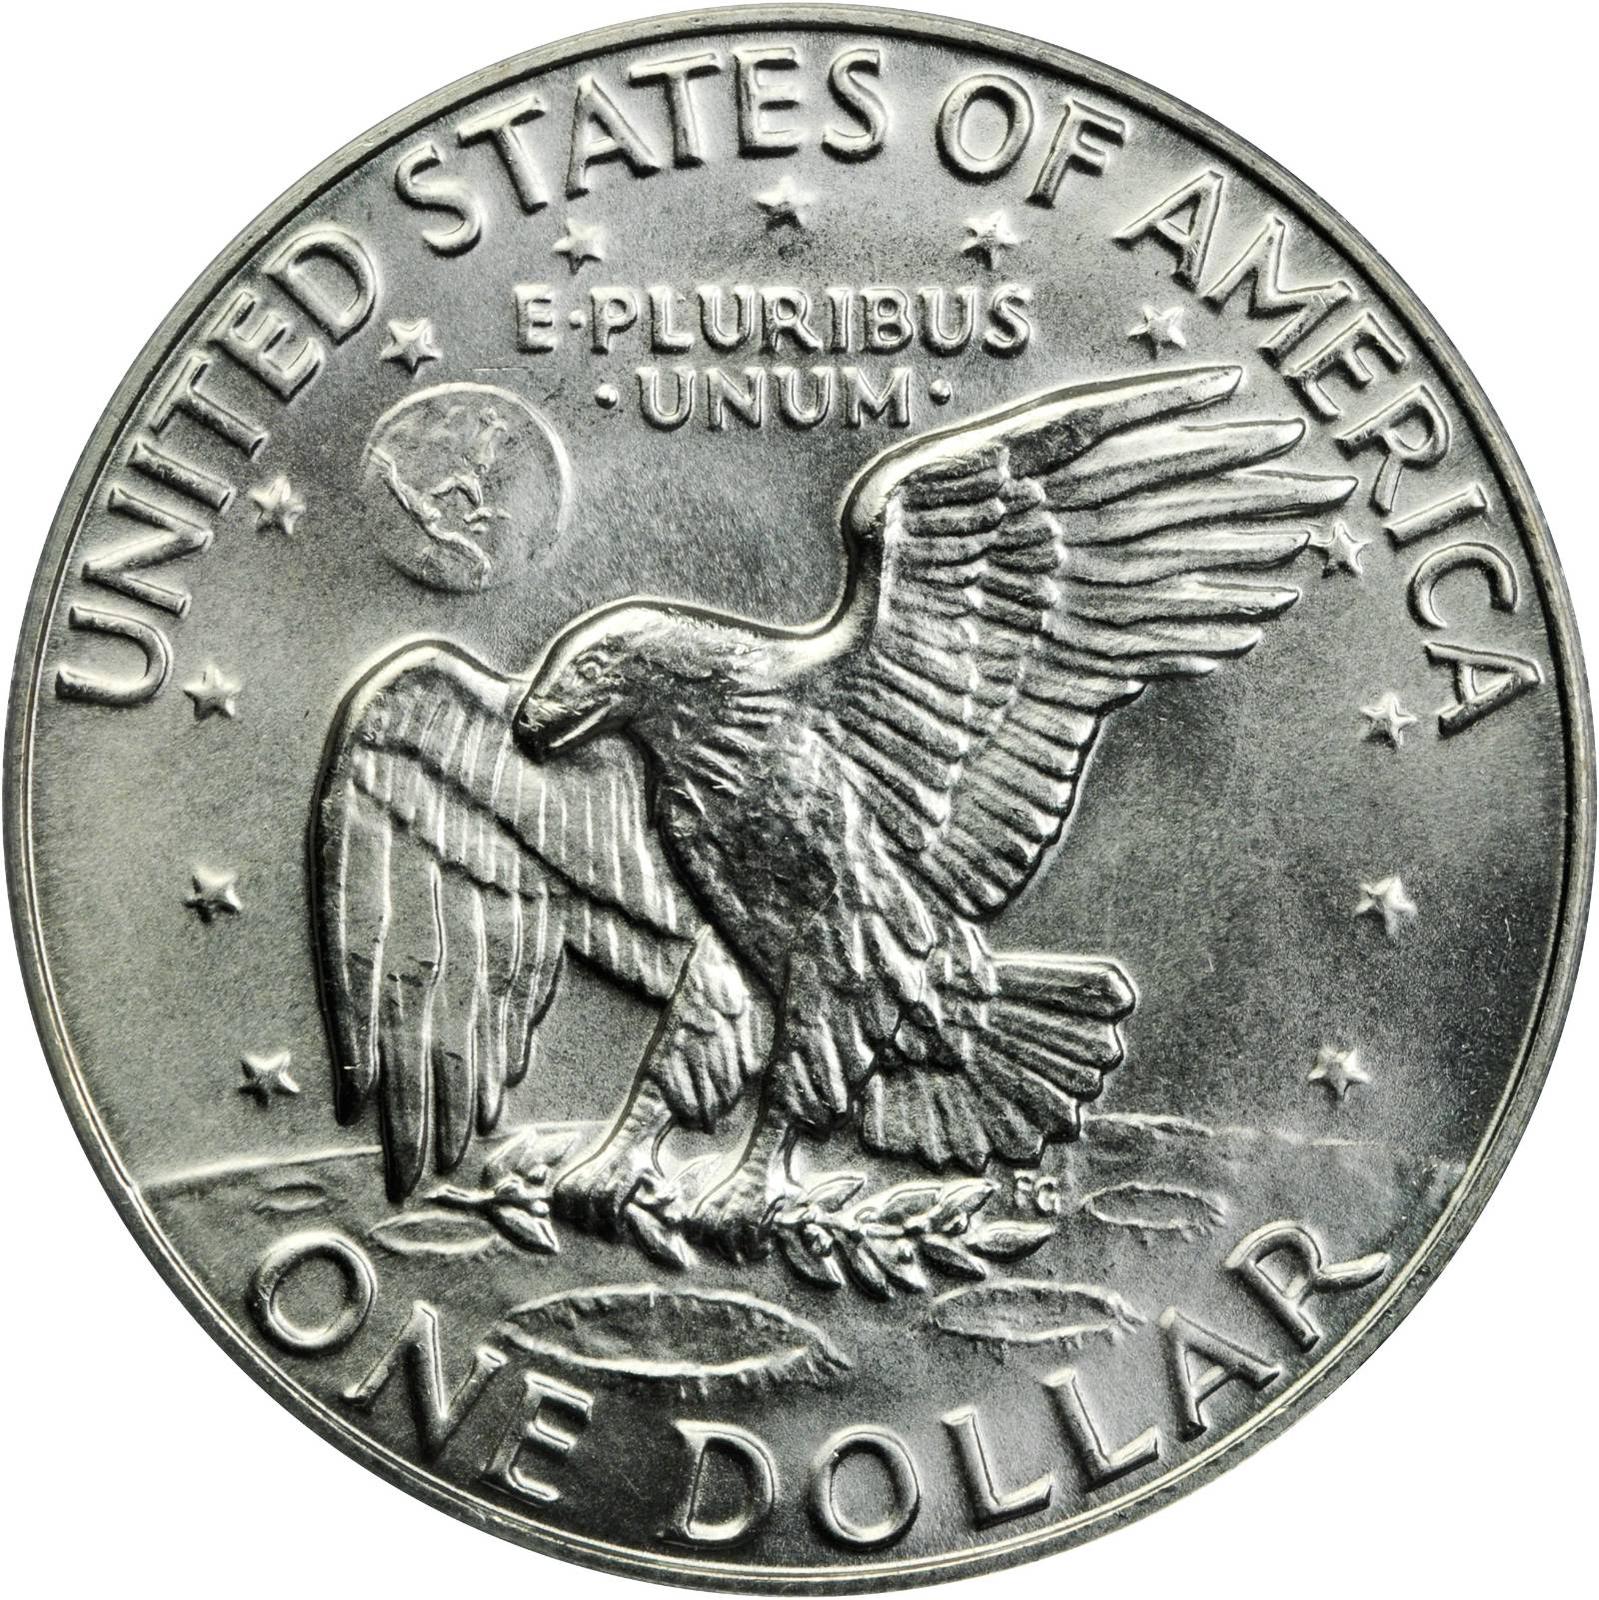 Value of 1974 Eisenhower Dollar | Sell Modern Coins